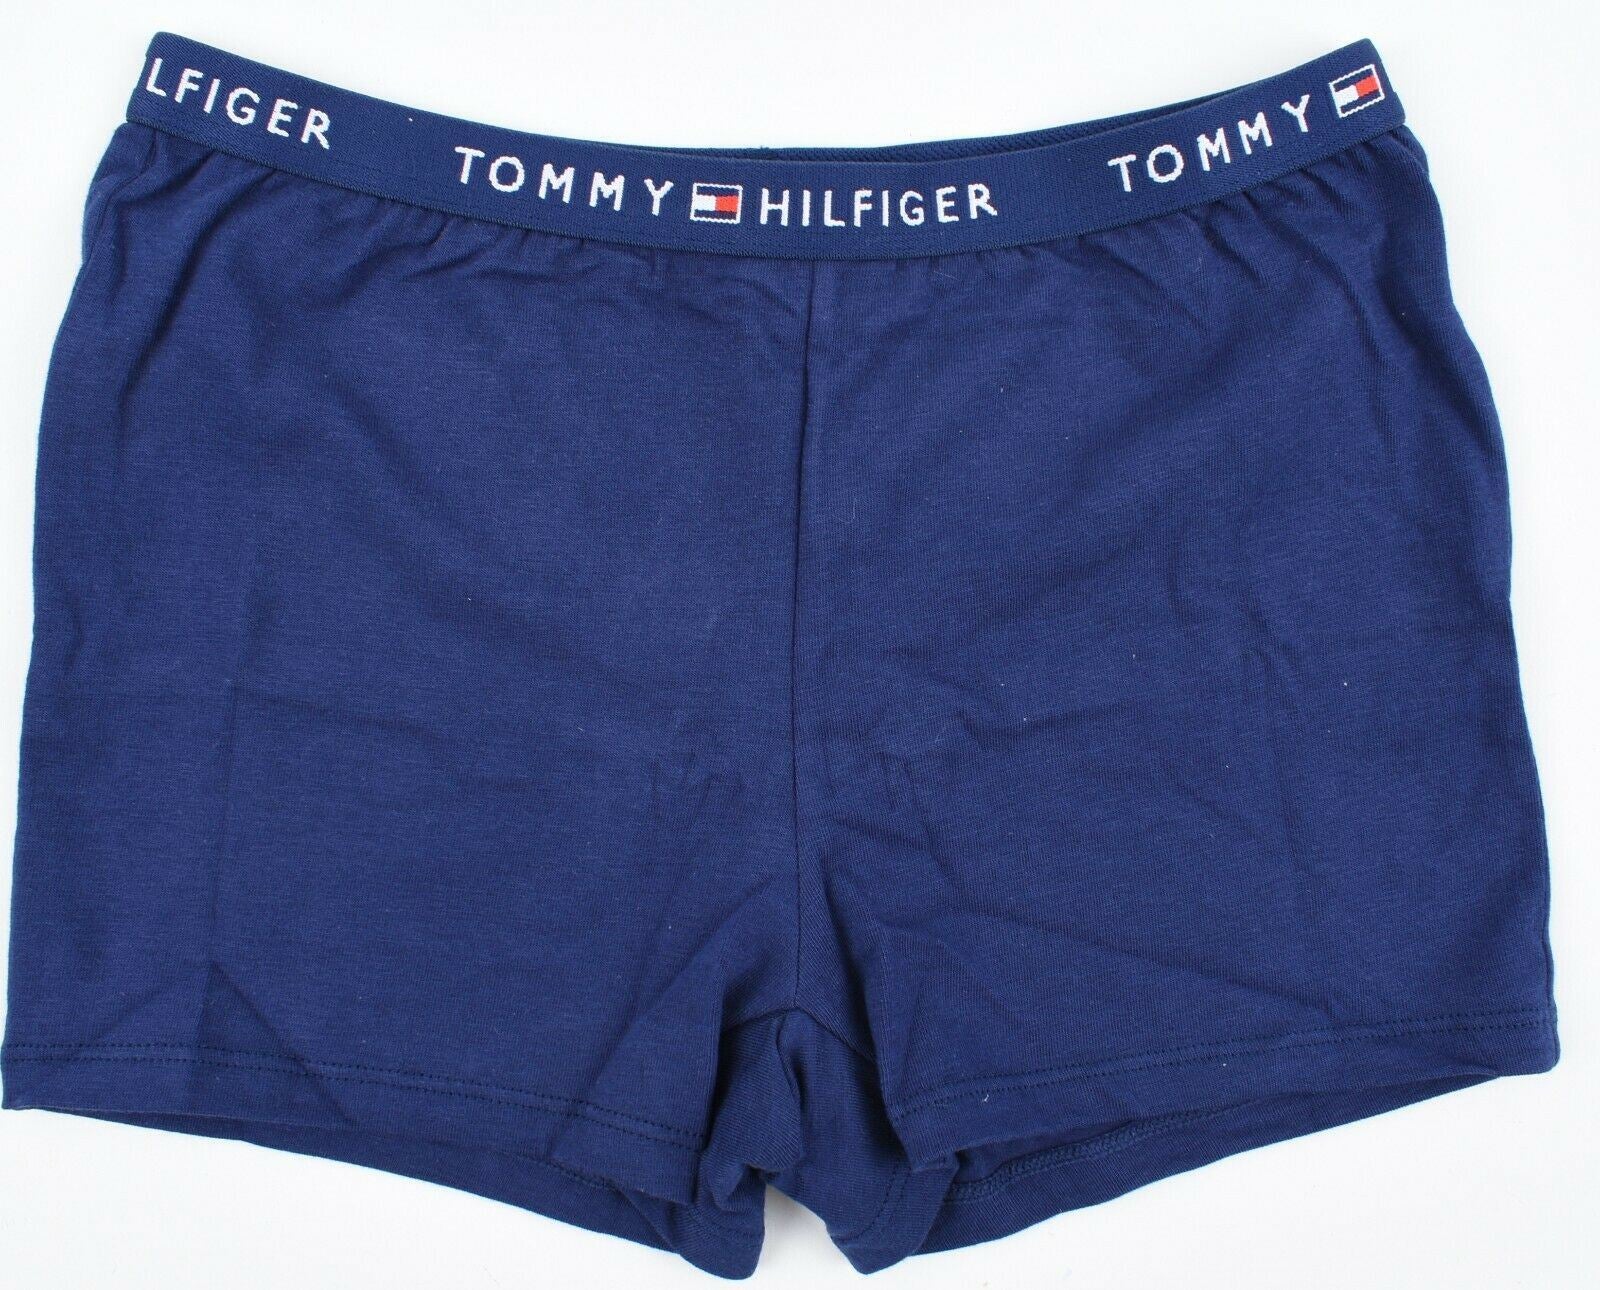 TOMMY HILFIGER Girls Underwear 2pk Boy Shorts Briefs Knickers 8 y /9 y /10 years